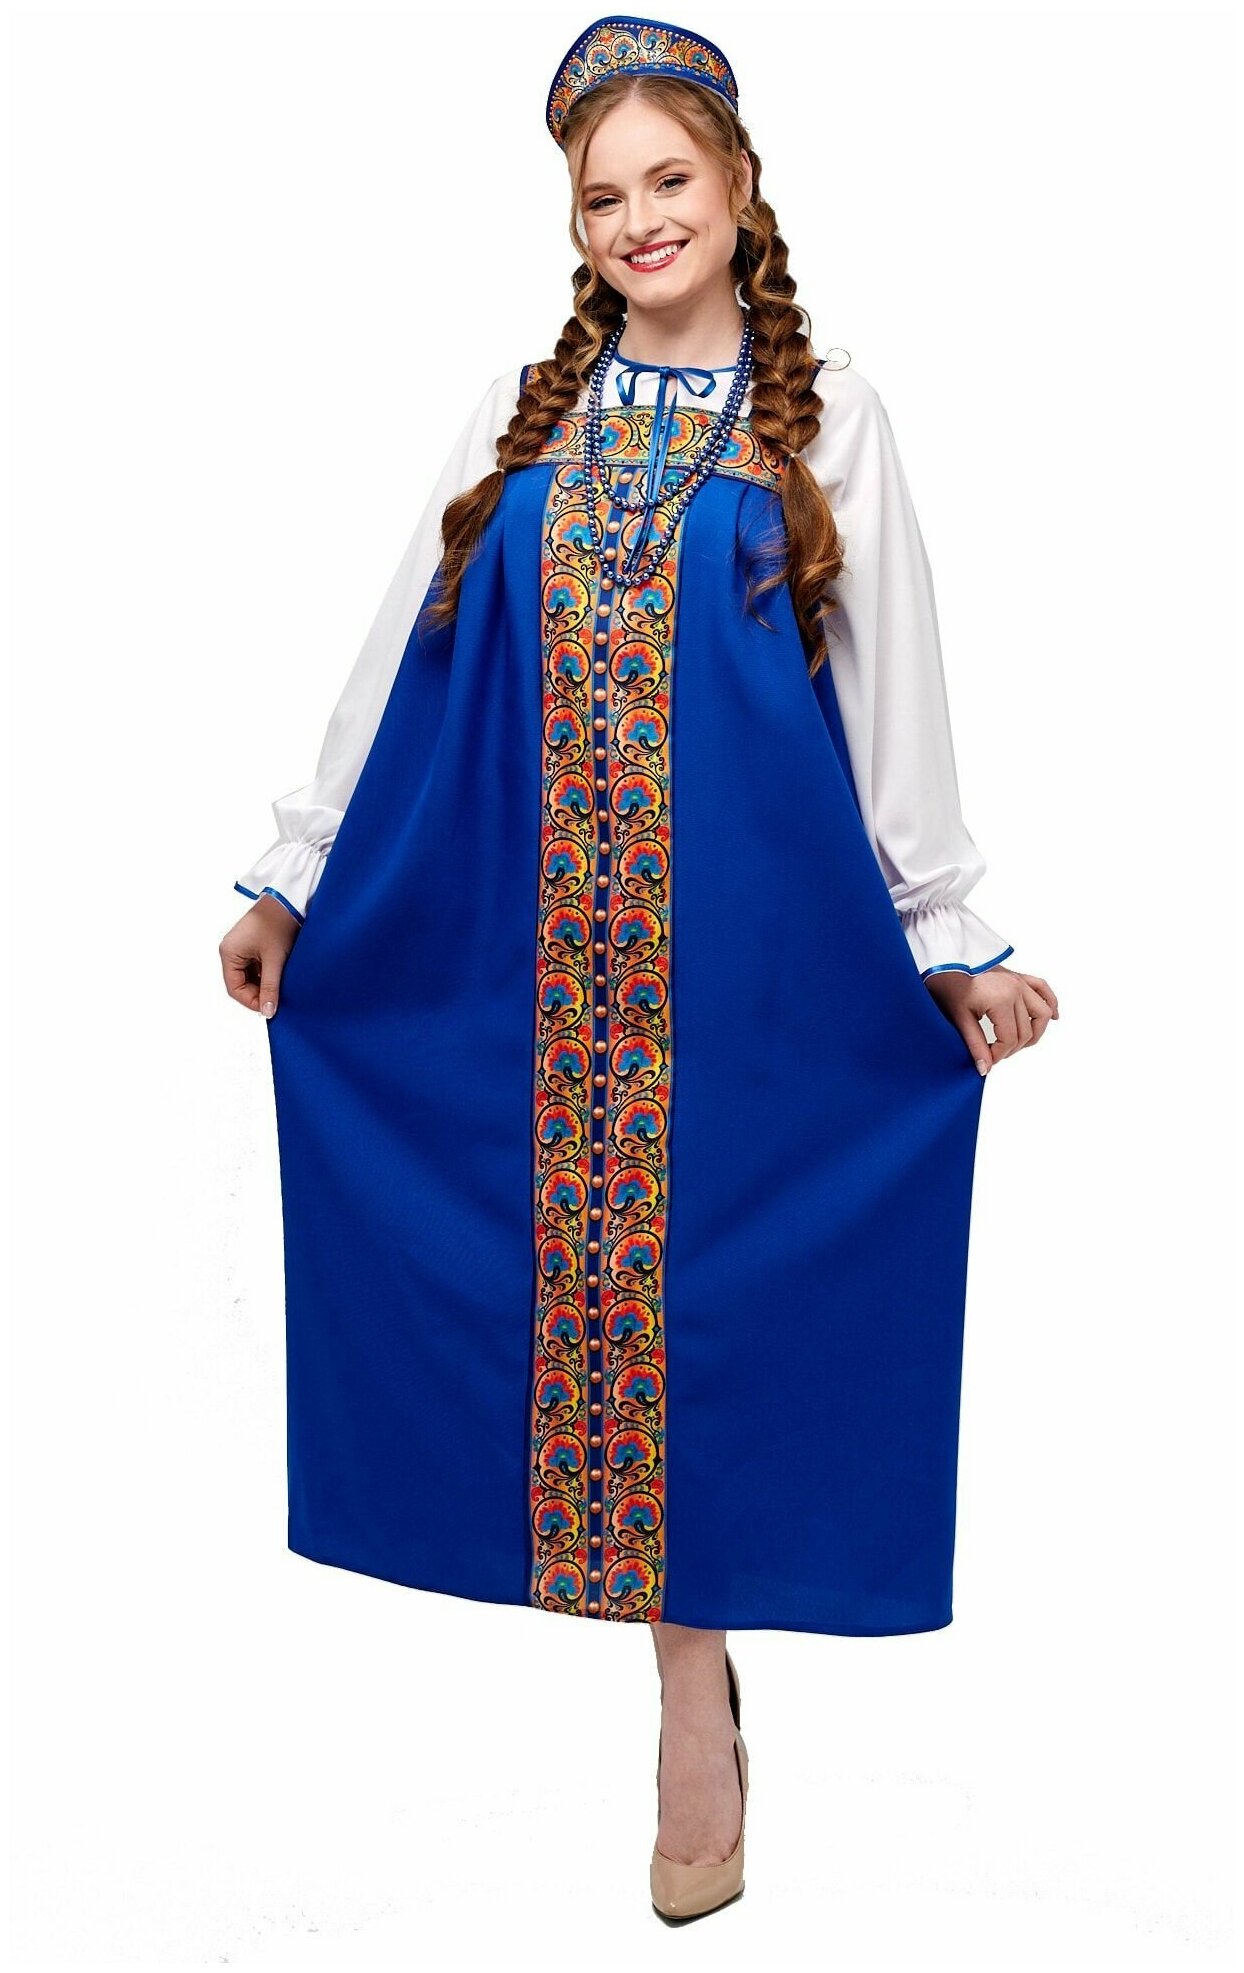 Русский народный сарафан женский взрослый синий